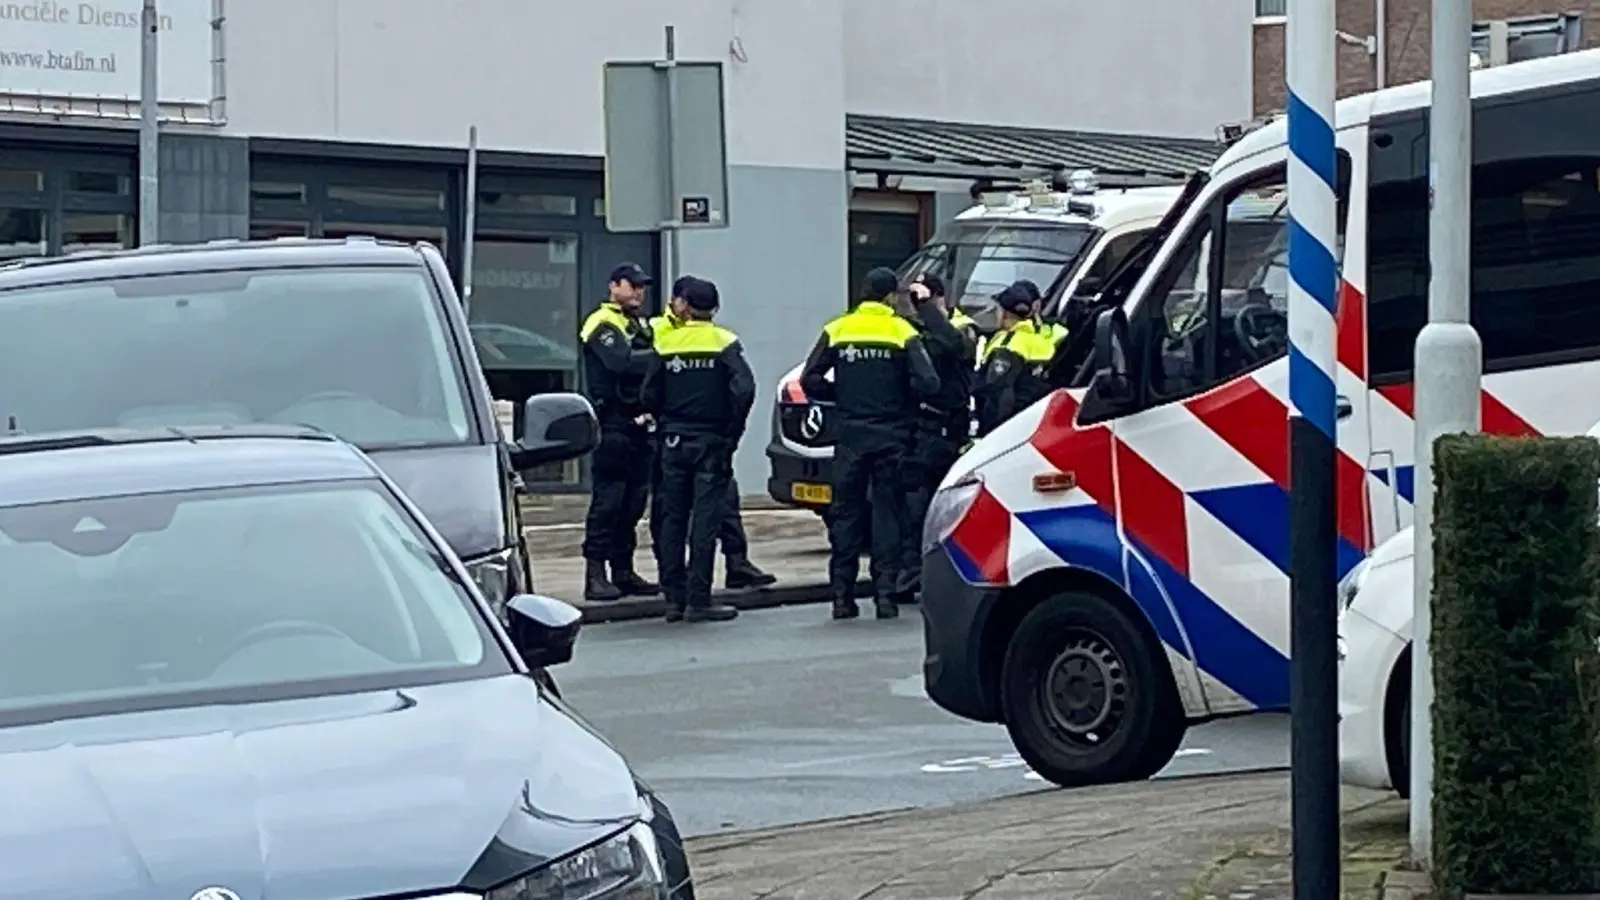 In der niederländischen Stadt Ede rückte die Polizei aufgrund einer Geiselnahme zu einem Großeinsatz aus. (Bild: Aleksandar Furtula/AP/dpa)